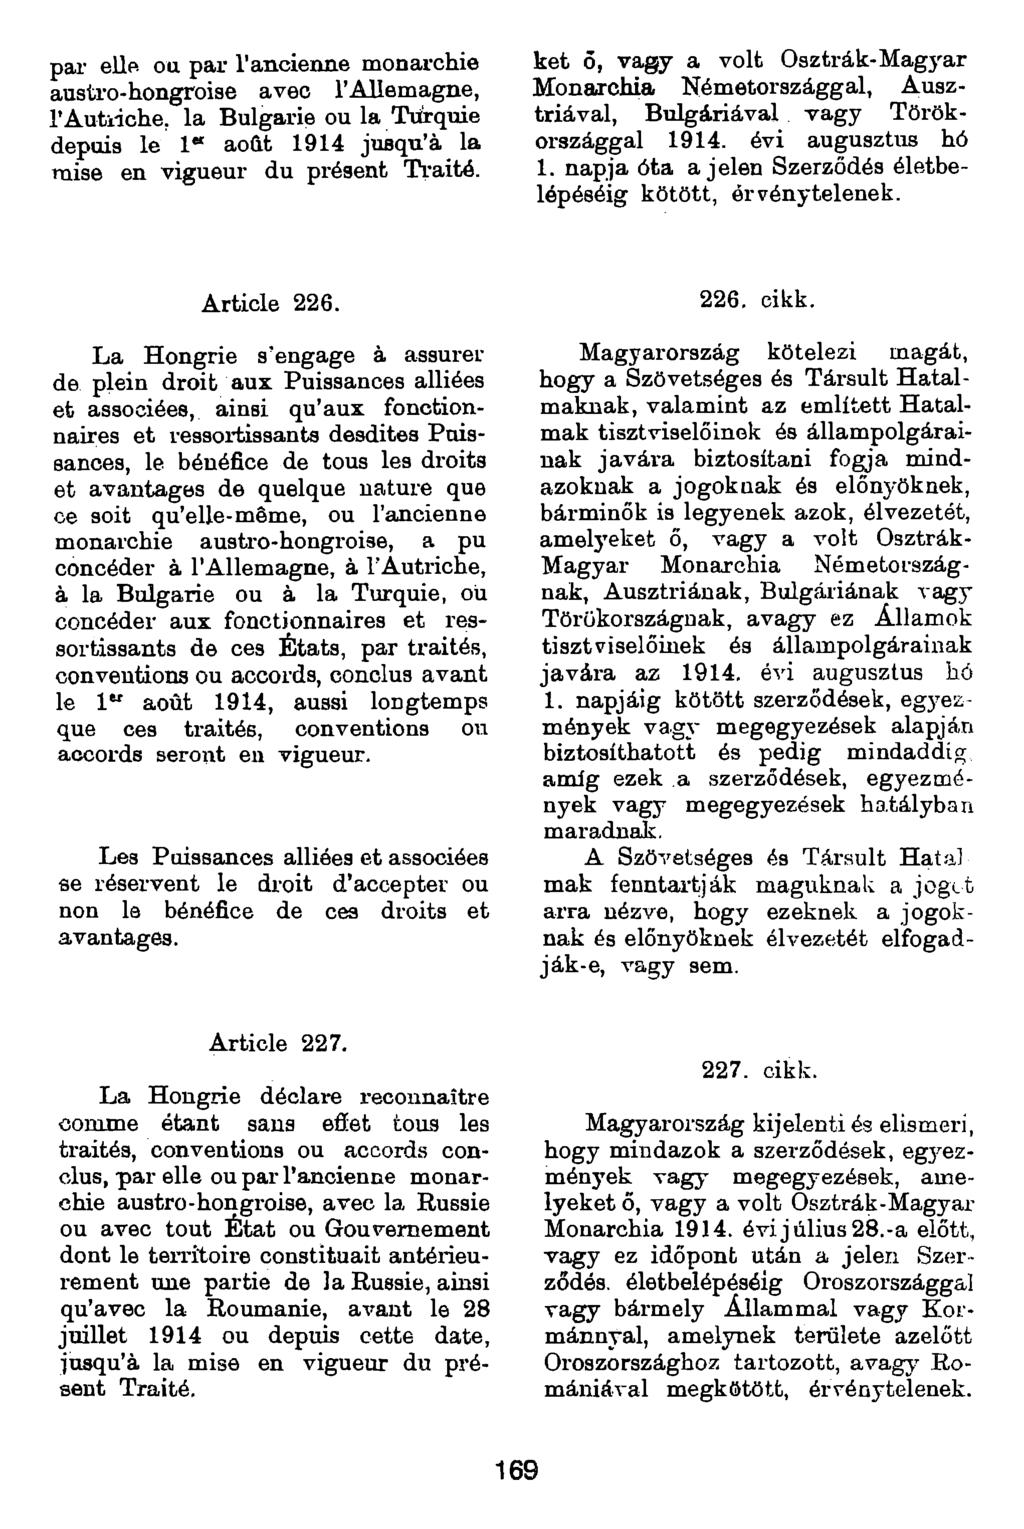 pai eüp ou par l'ancienne monarchie austro-hongroise avec l Allemagne, rautiiche. la Bulgarie ou la Turquie depuis le 1 aocit 1914 jusqu à la mise en vigueur du présent Traité.